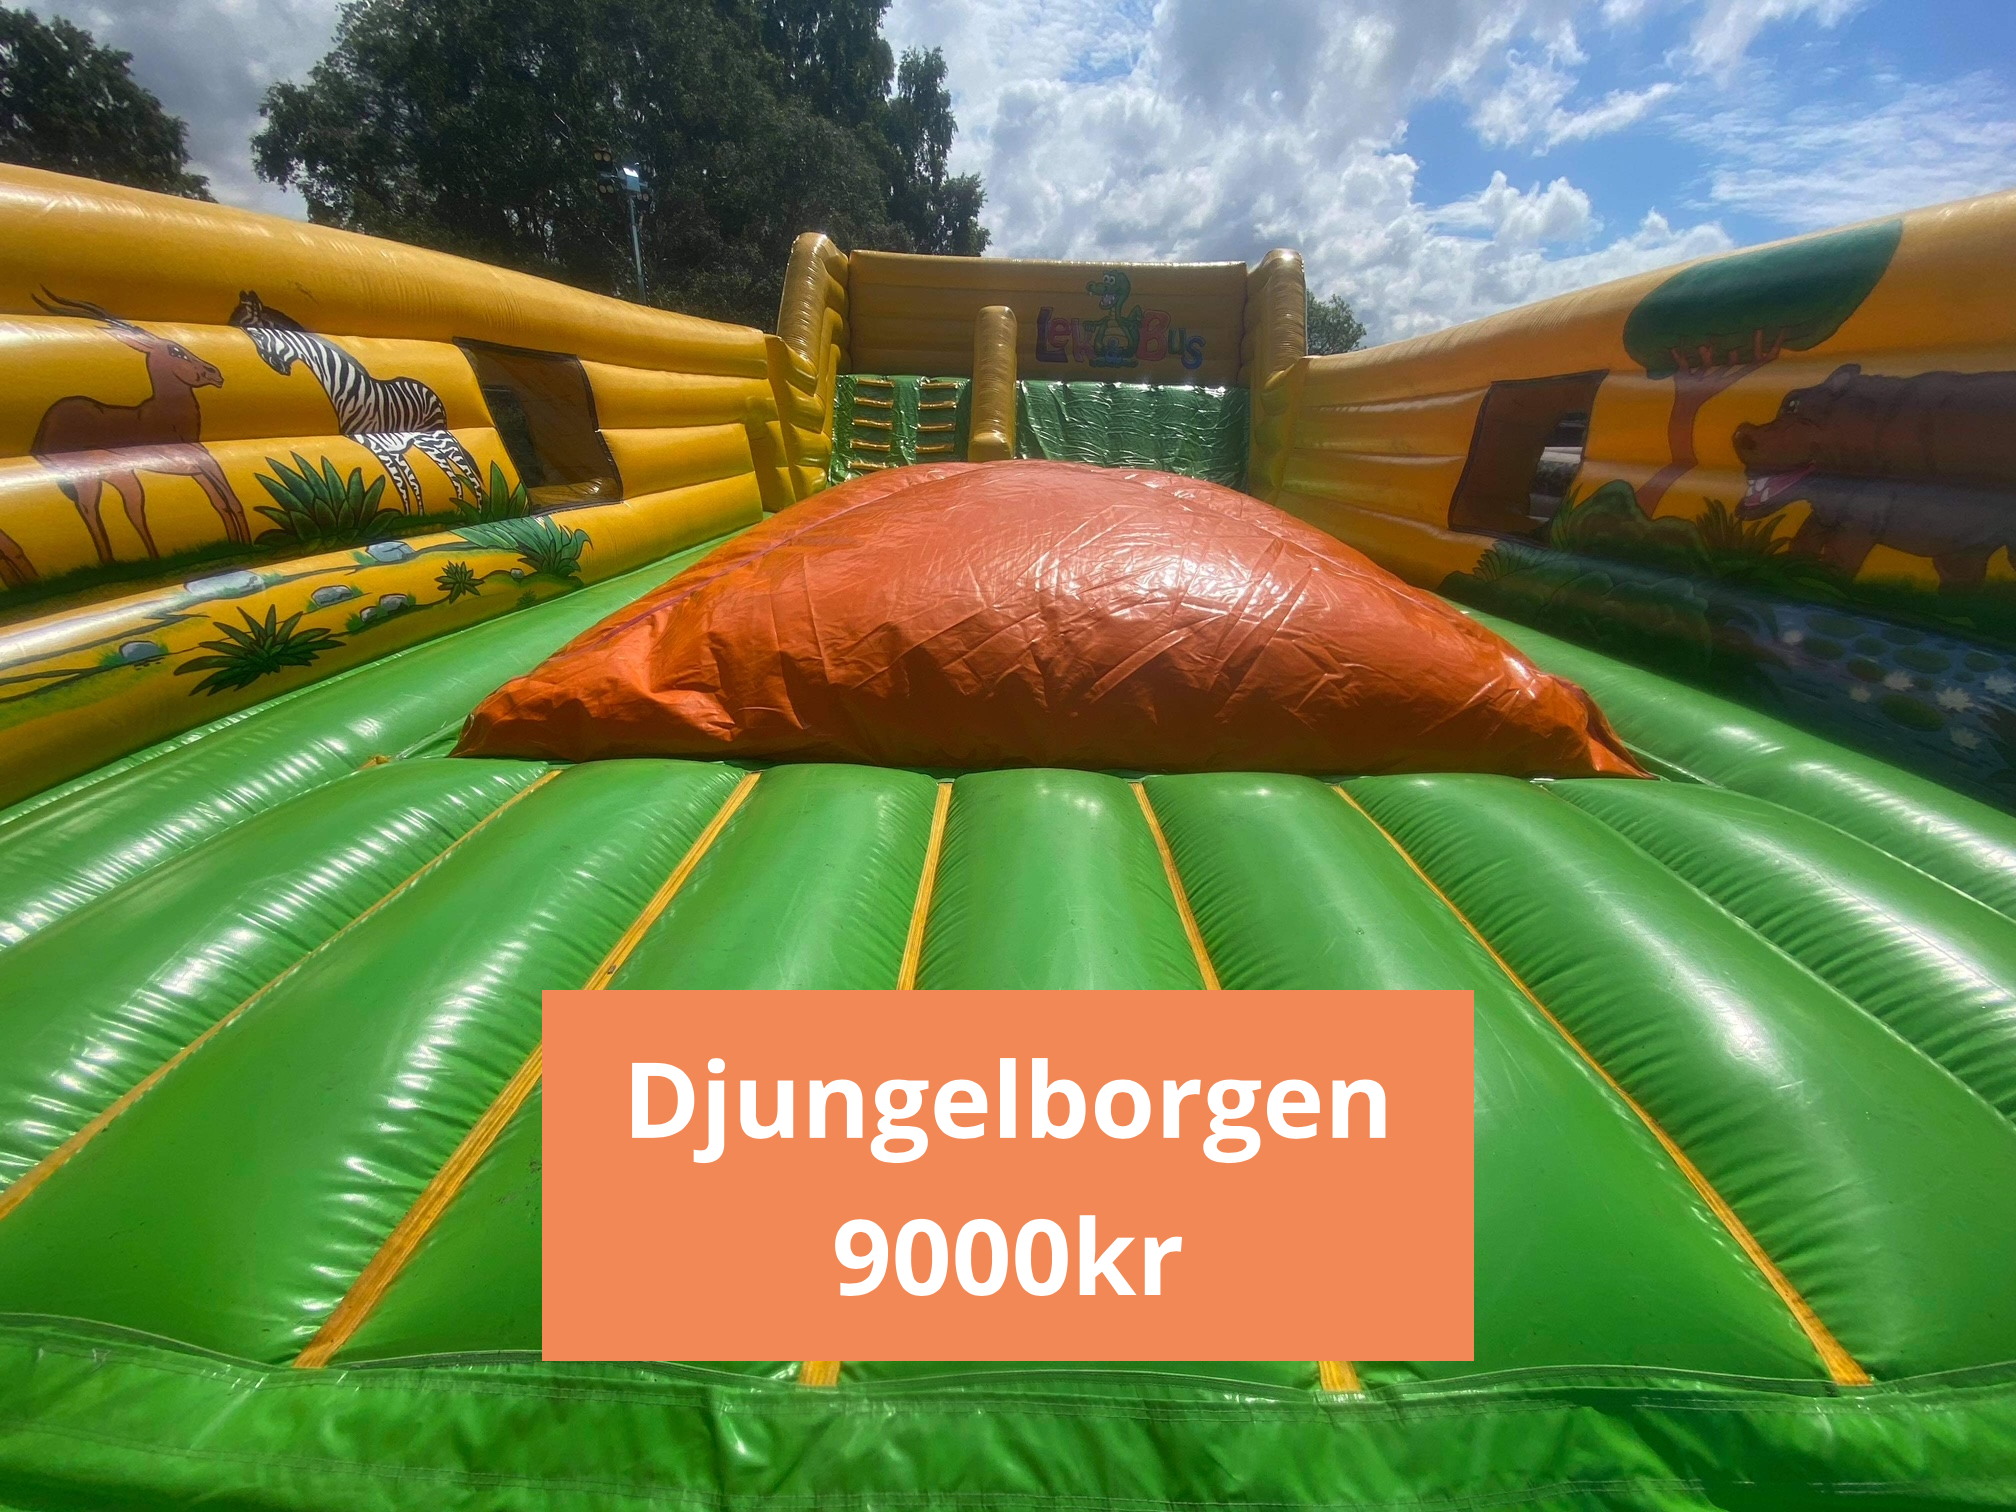 Djungelborgen - 9000kr